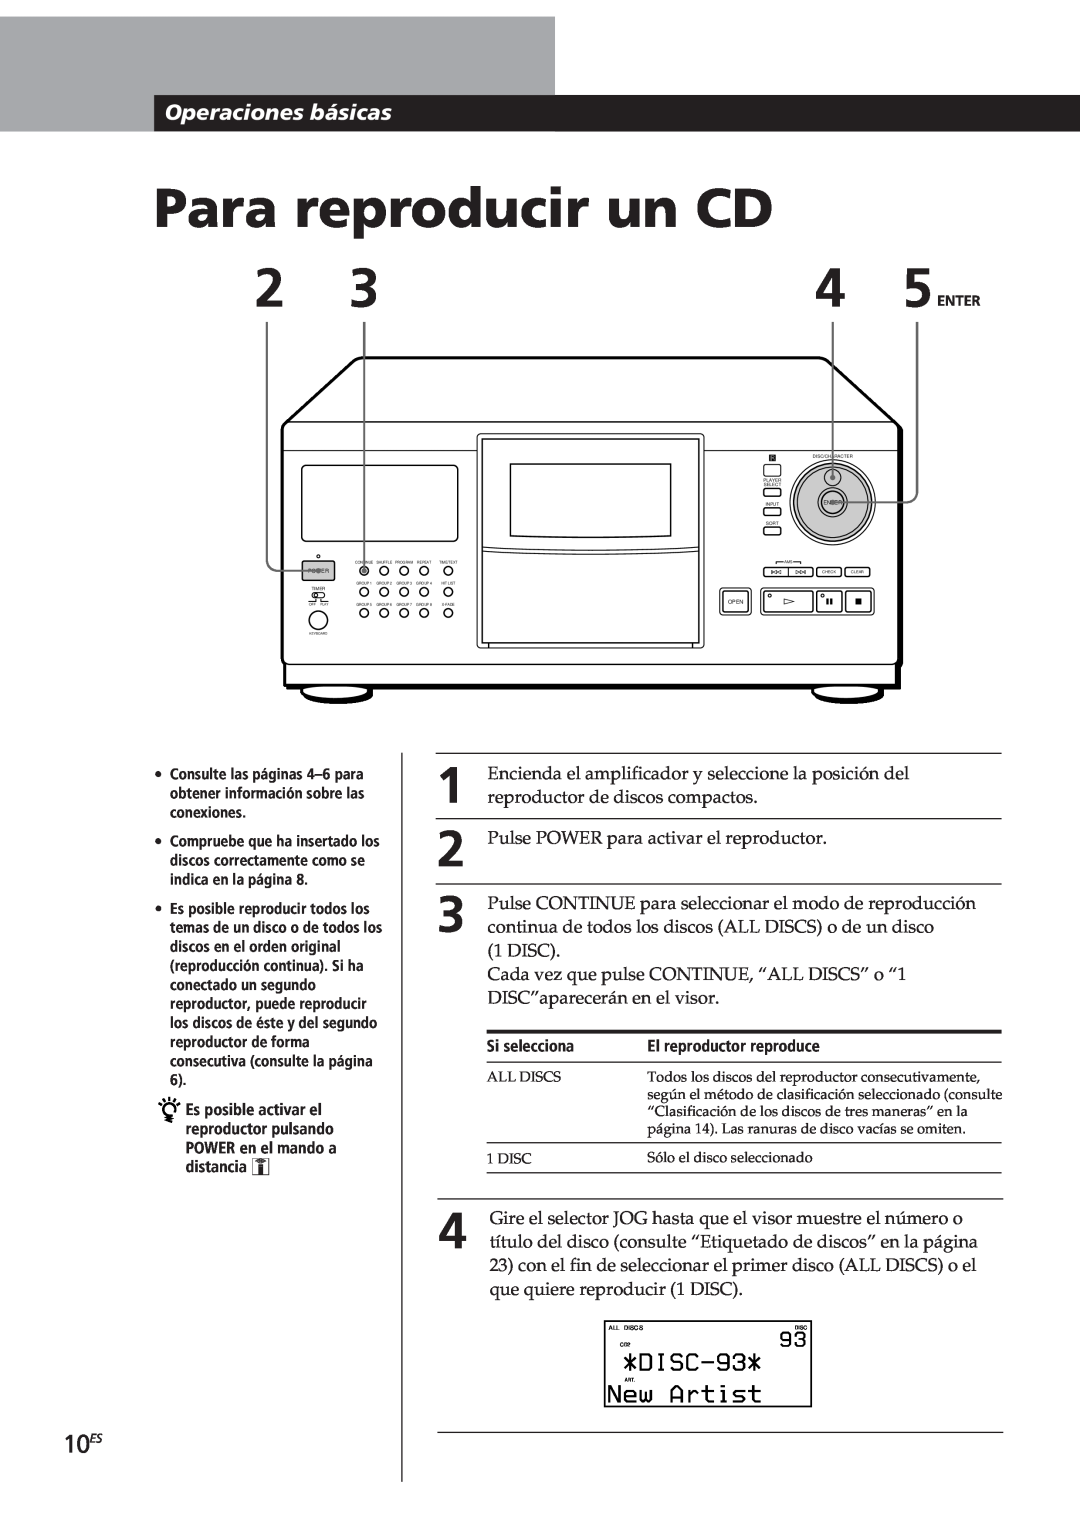 Sony CDP-CX90ES, CDP-CX270 manual Para reproducir un CD, 10ES, DISC-93, Artist, Operaciones básicas 